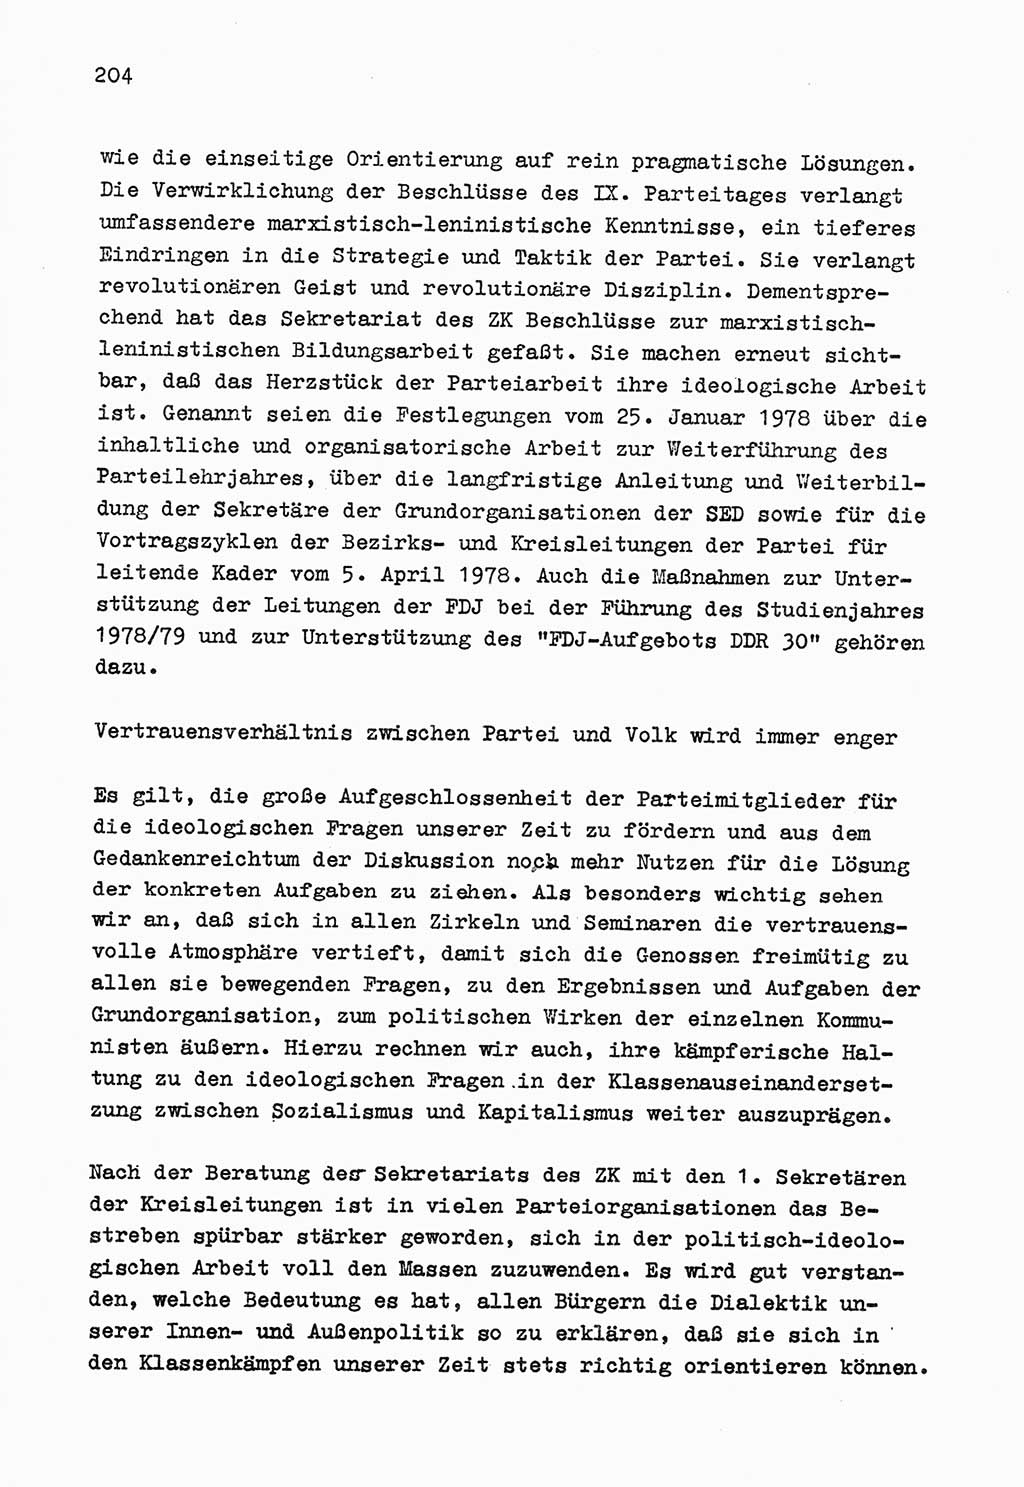 Zu Fragen der Parteiarbeit [Sozialistische Einheitspartei Deutschlands (SED) Deutsche Demokratische Republik (DDR)] 1979, Seite 204 (Fr. PA SED DDR 1979, S. 204)